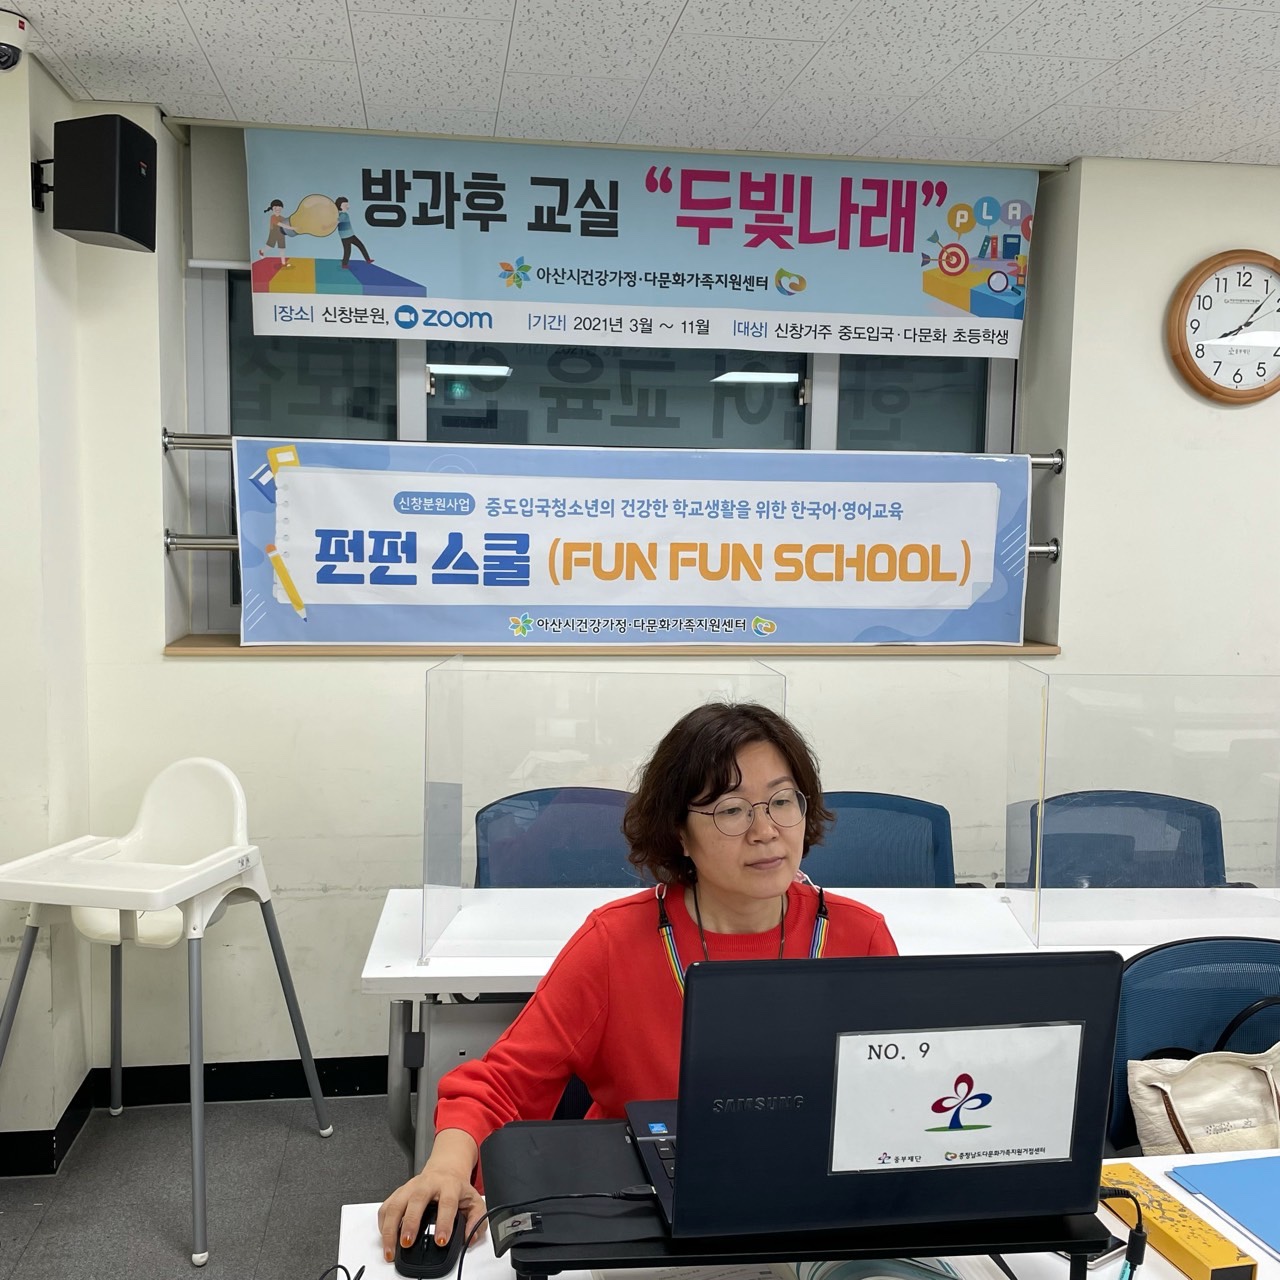 21.8.31. [신창분원] 청소년 한국어교육 "펀펀스쿨"  